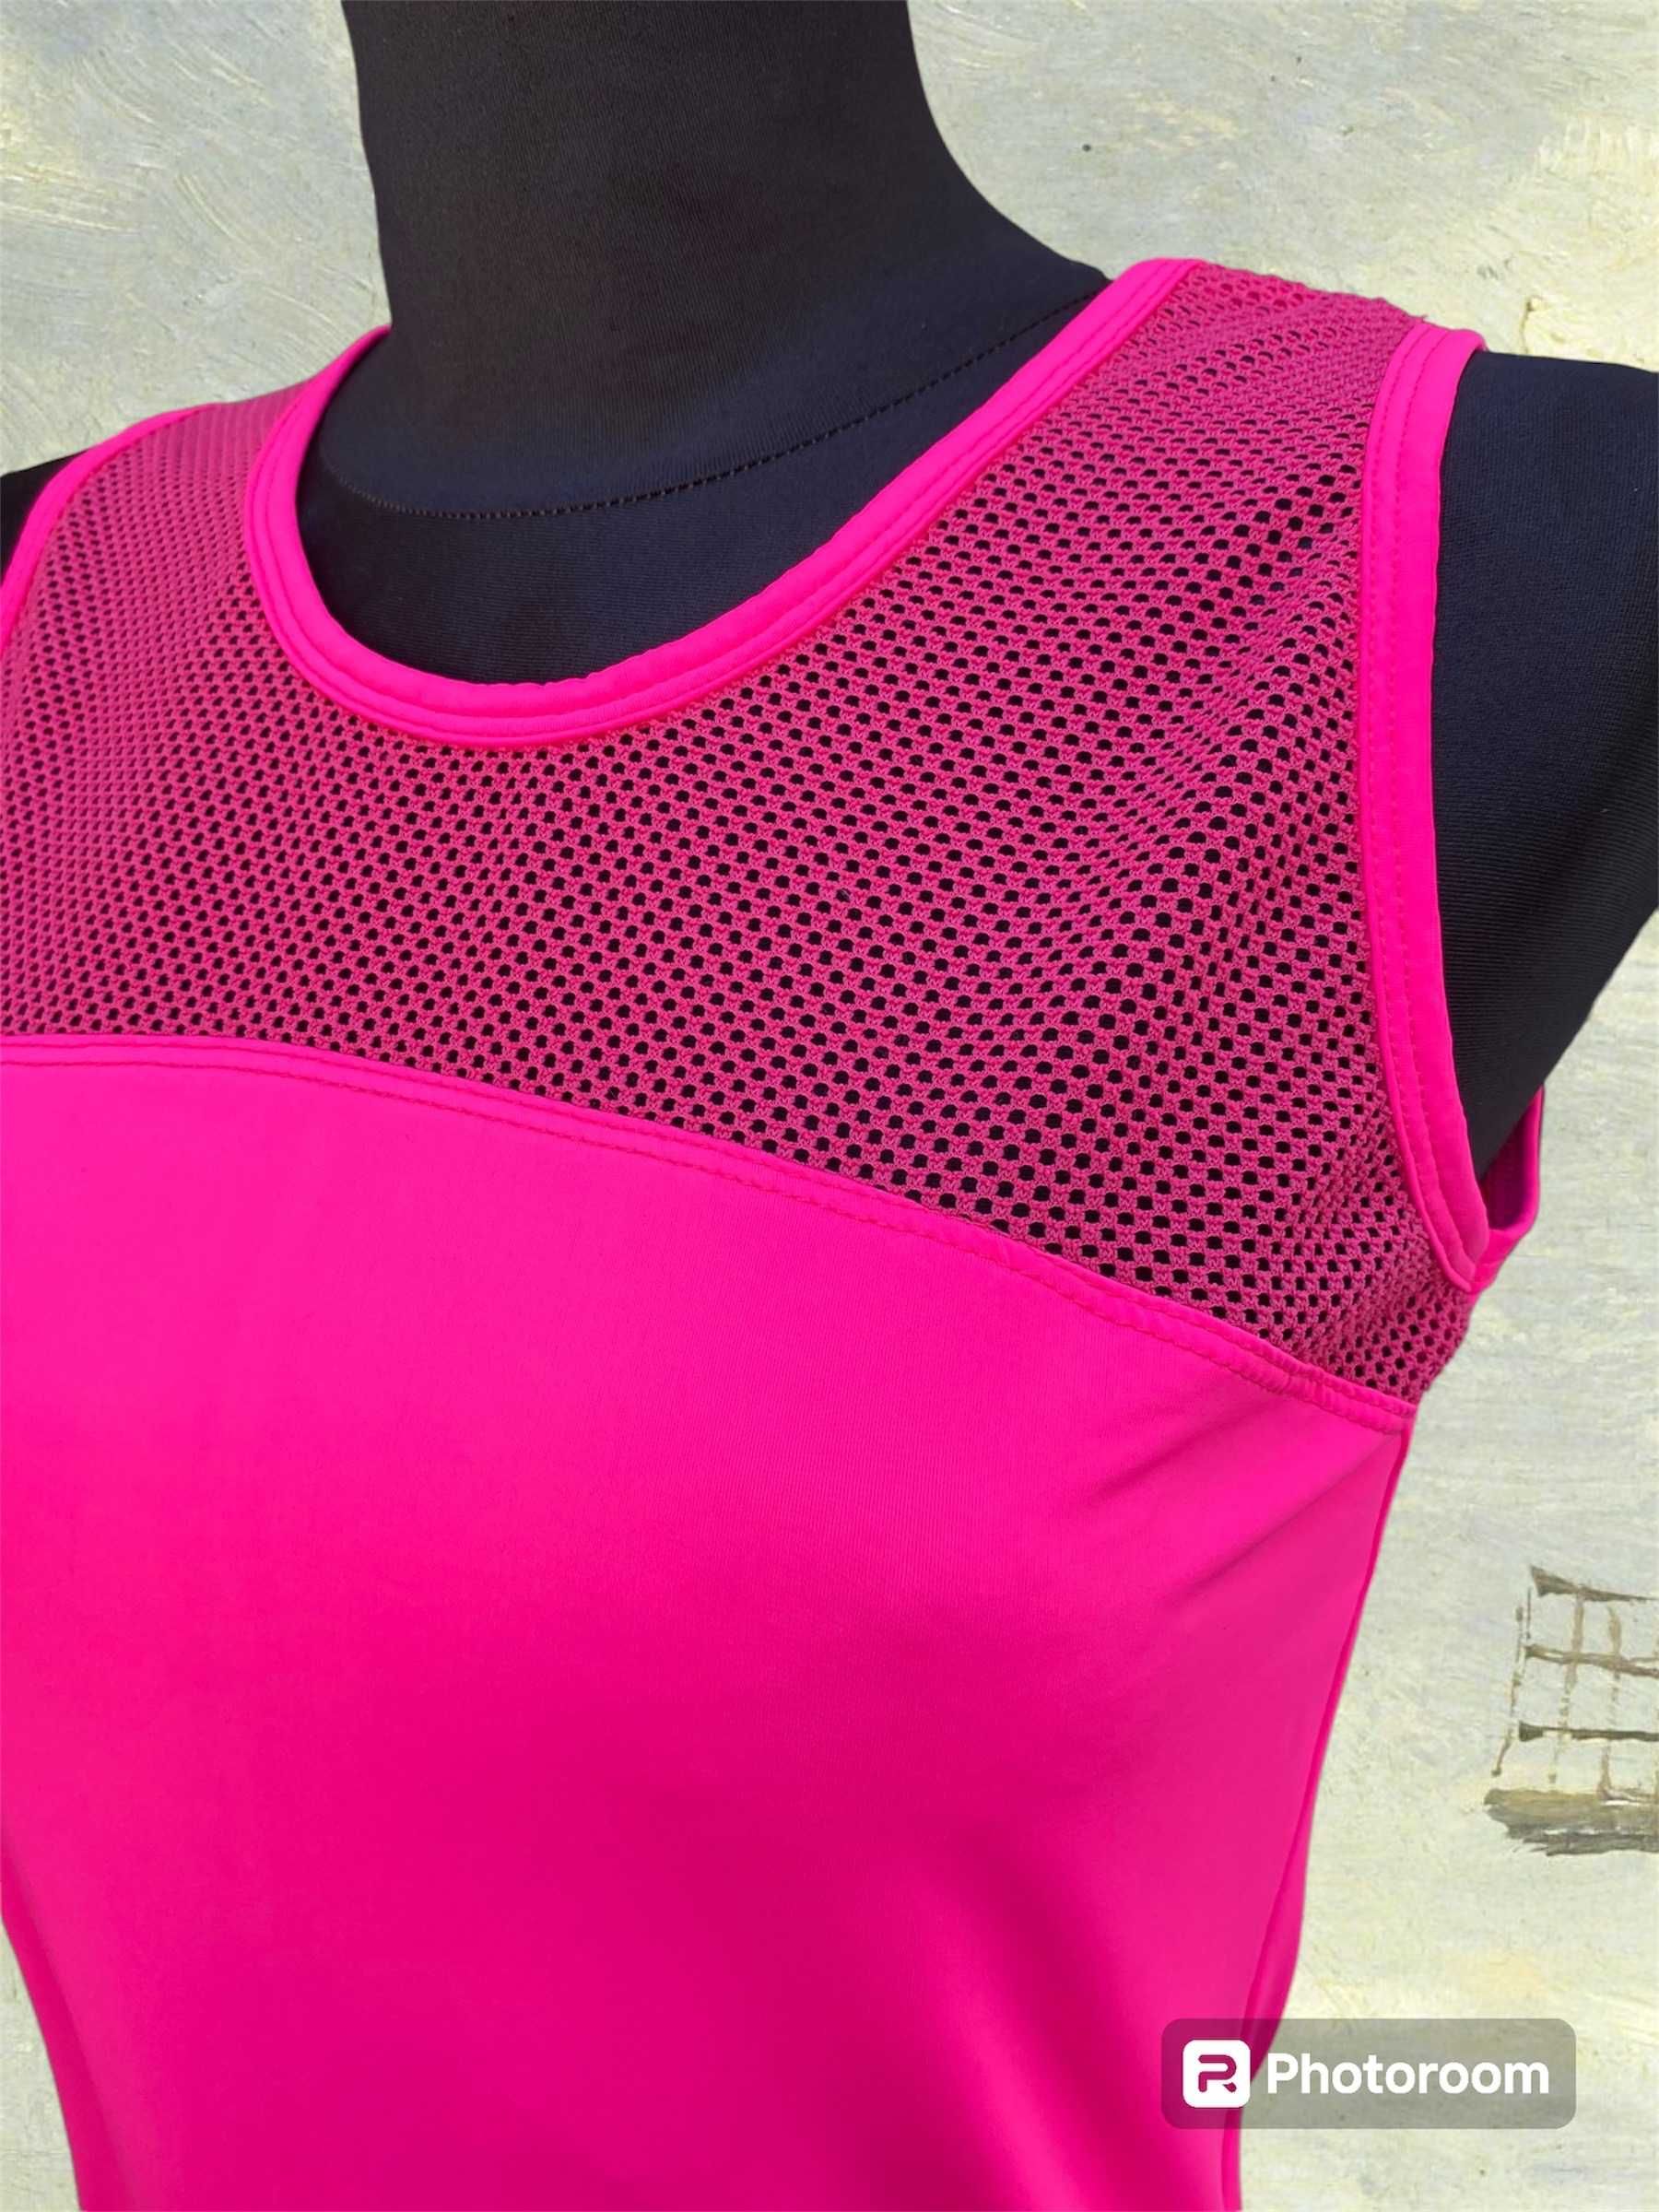 Bluzka koszulka damska sportowa różowa siatkowana  do ćwiczeń 38 M